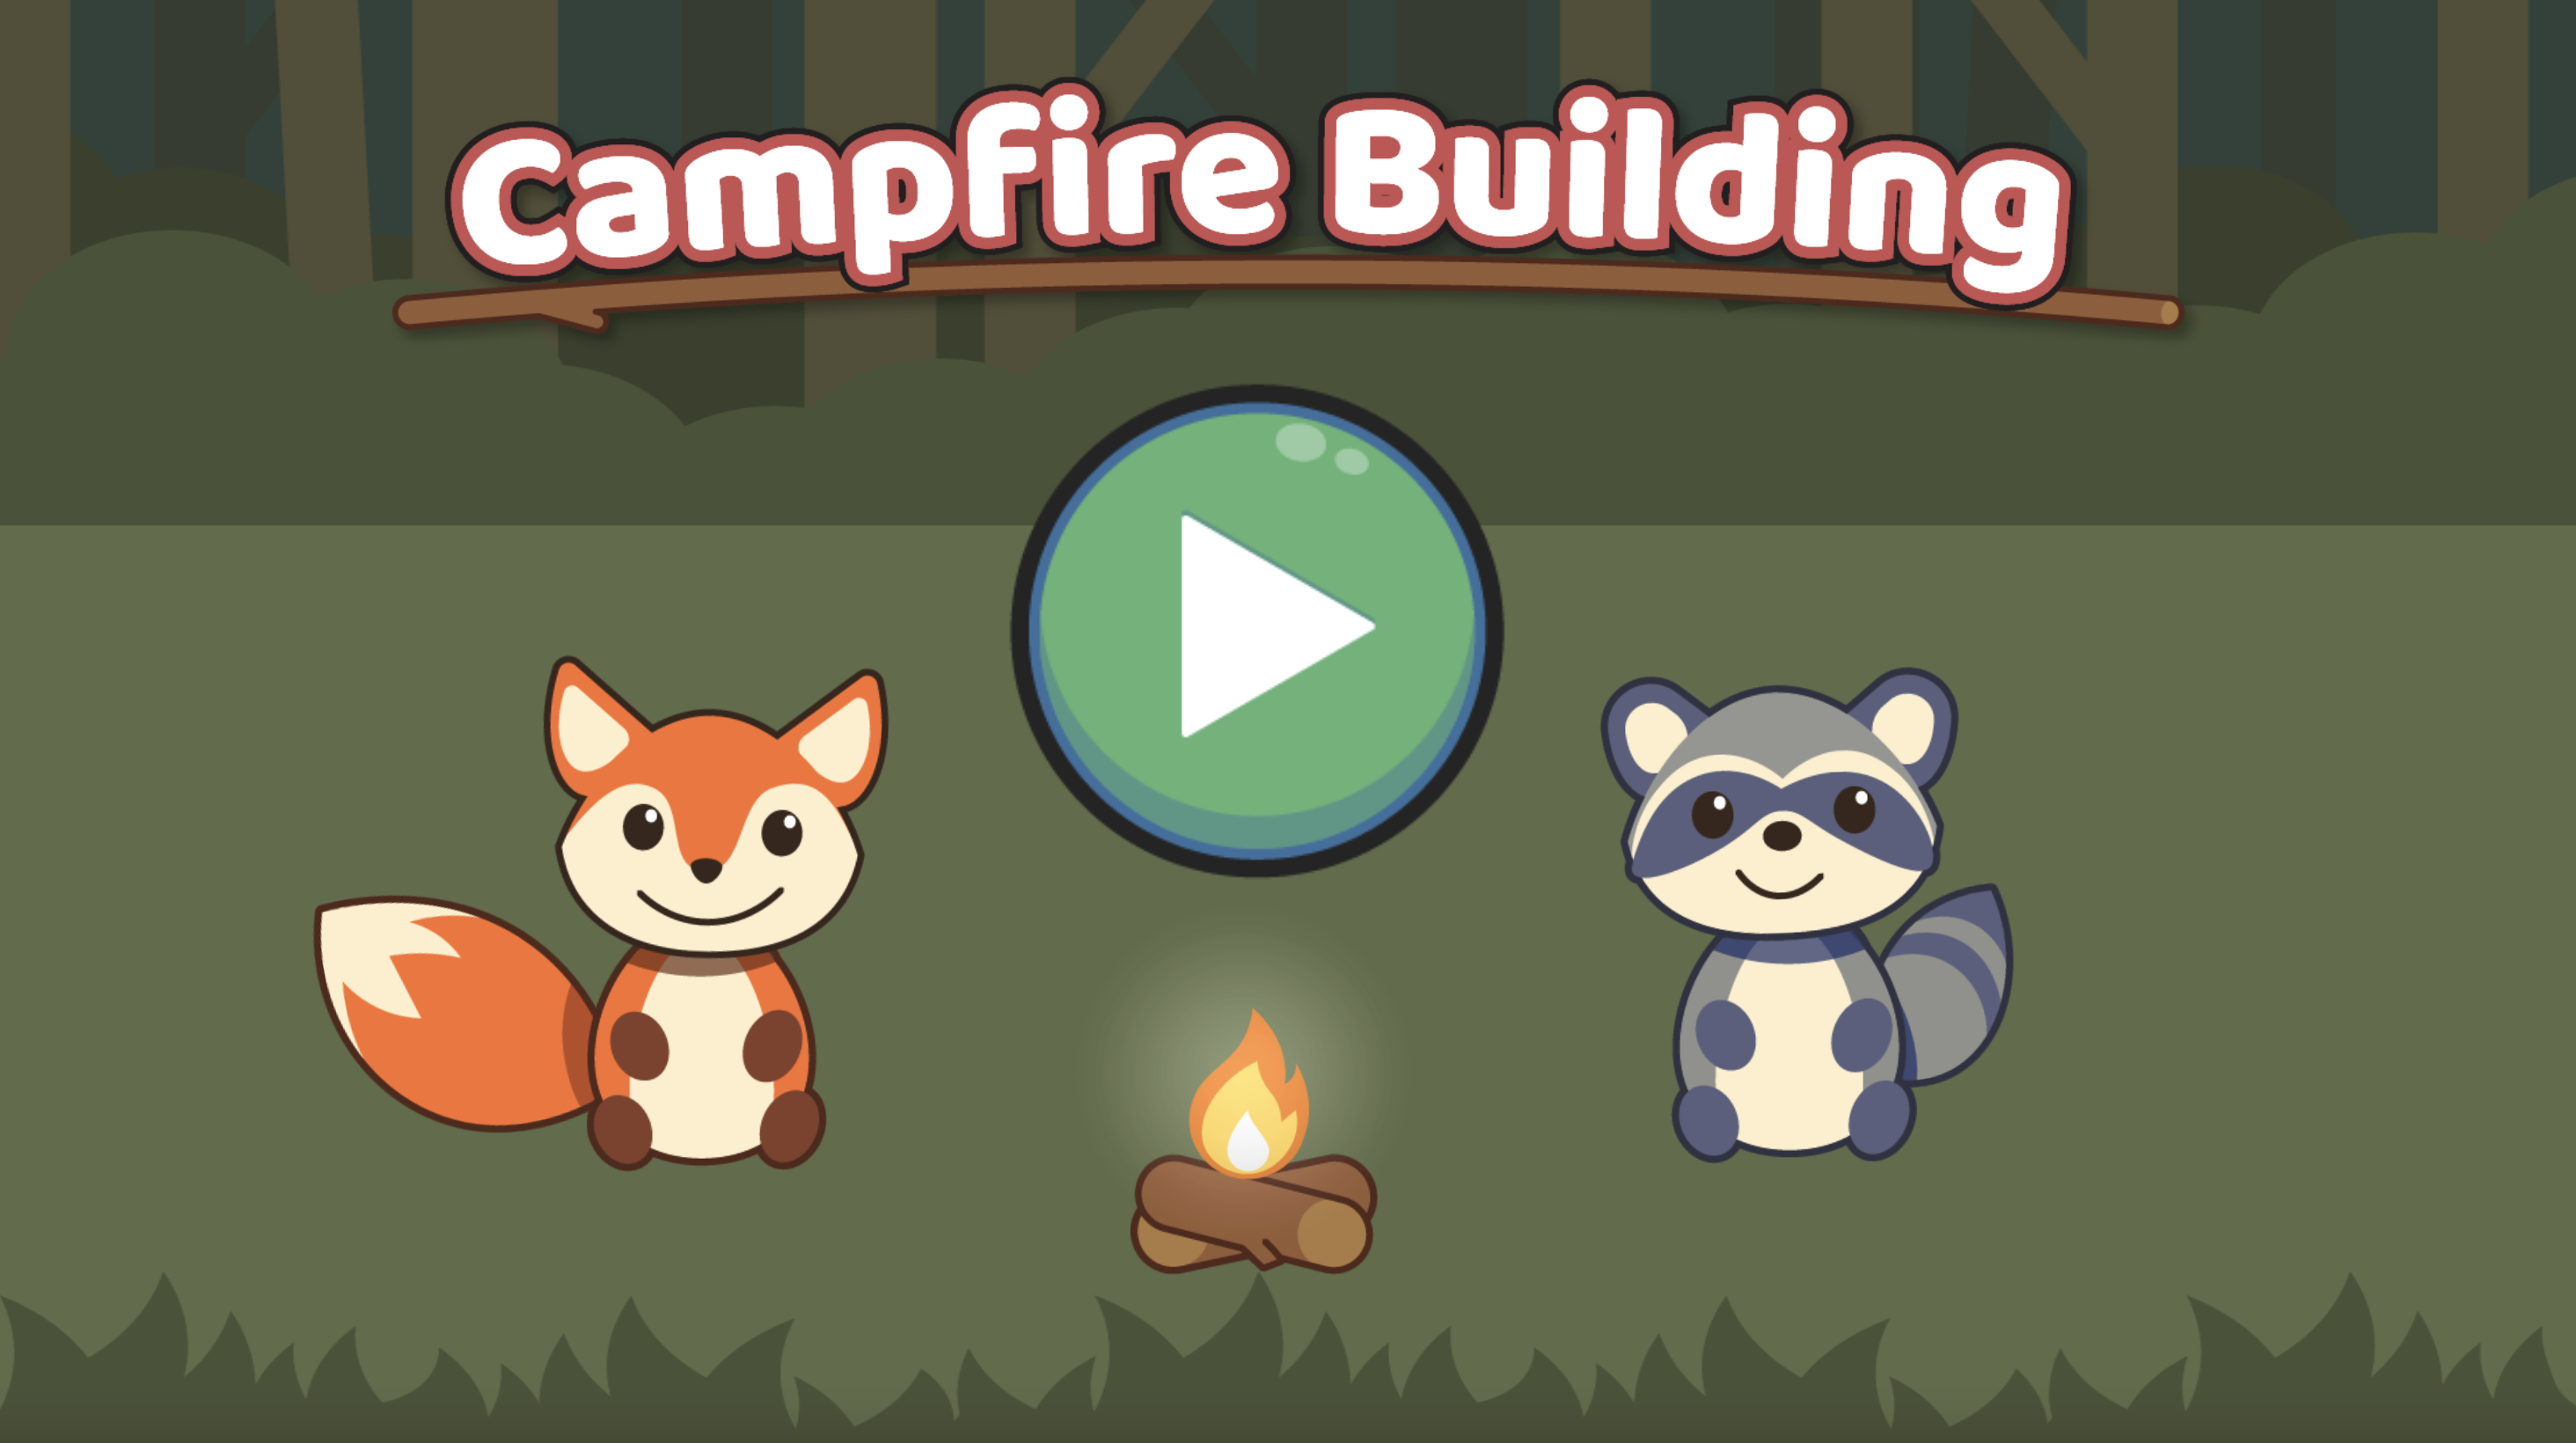 Campfire Building